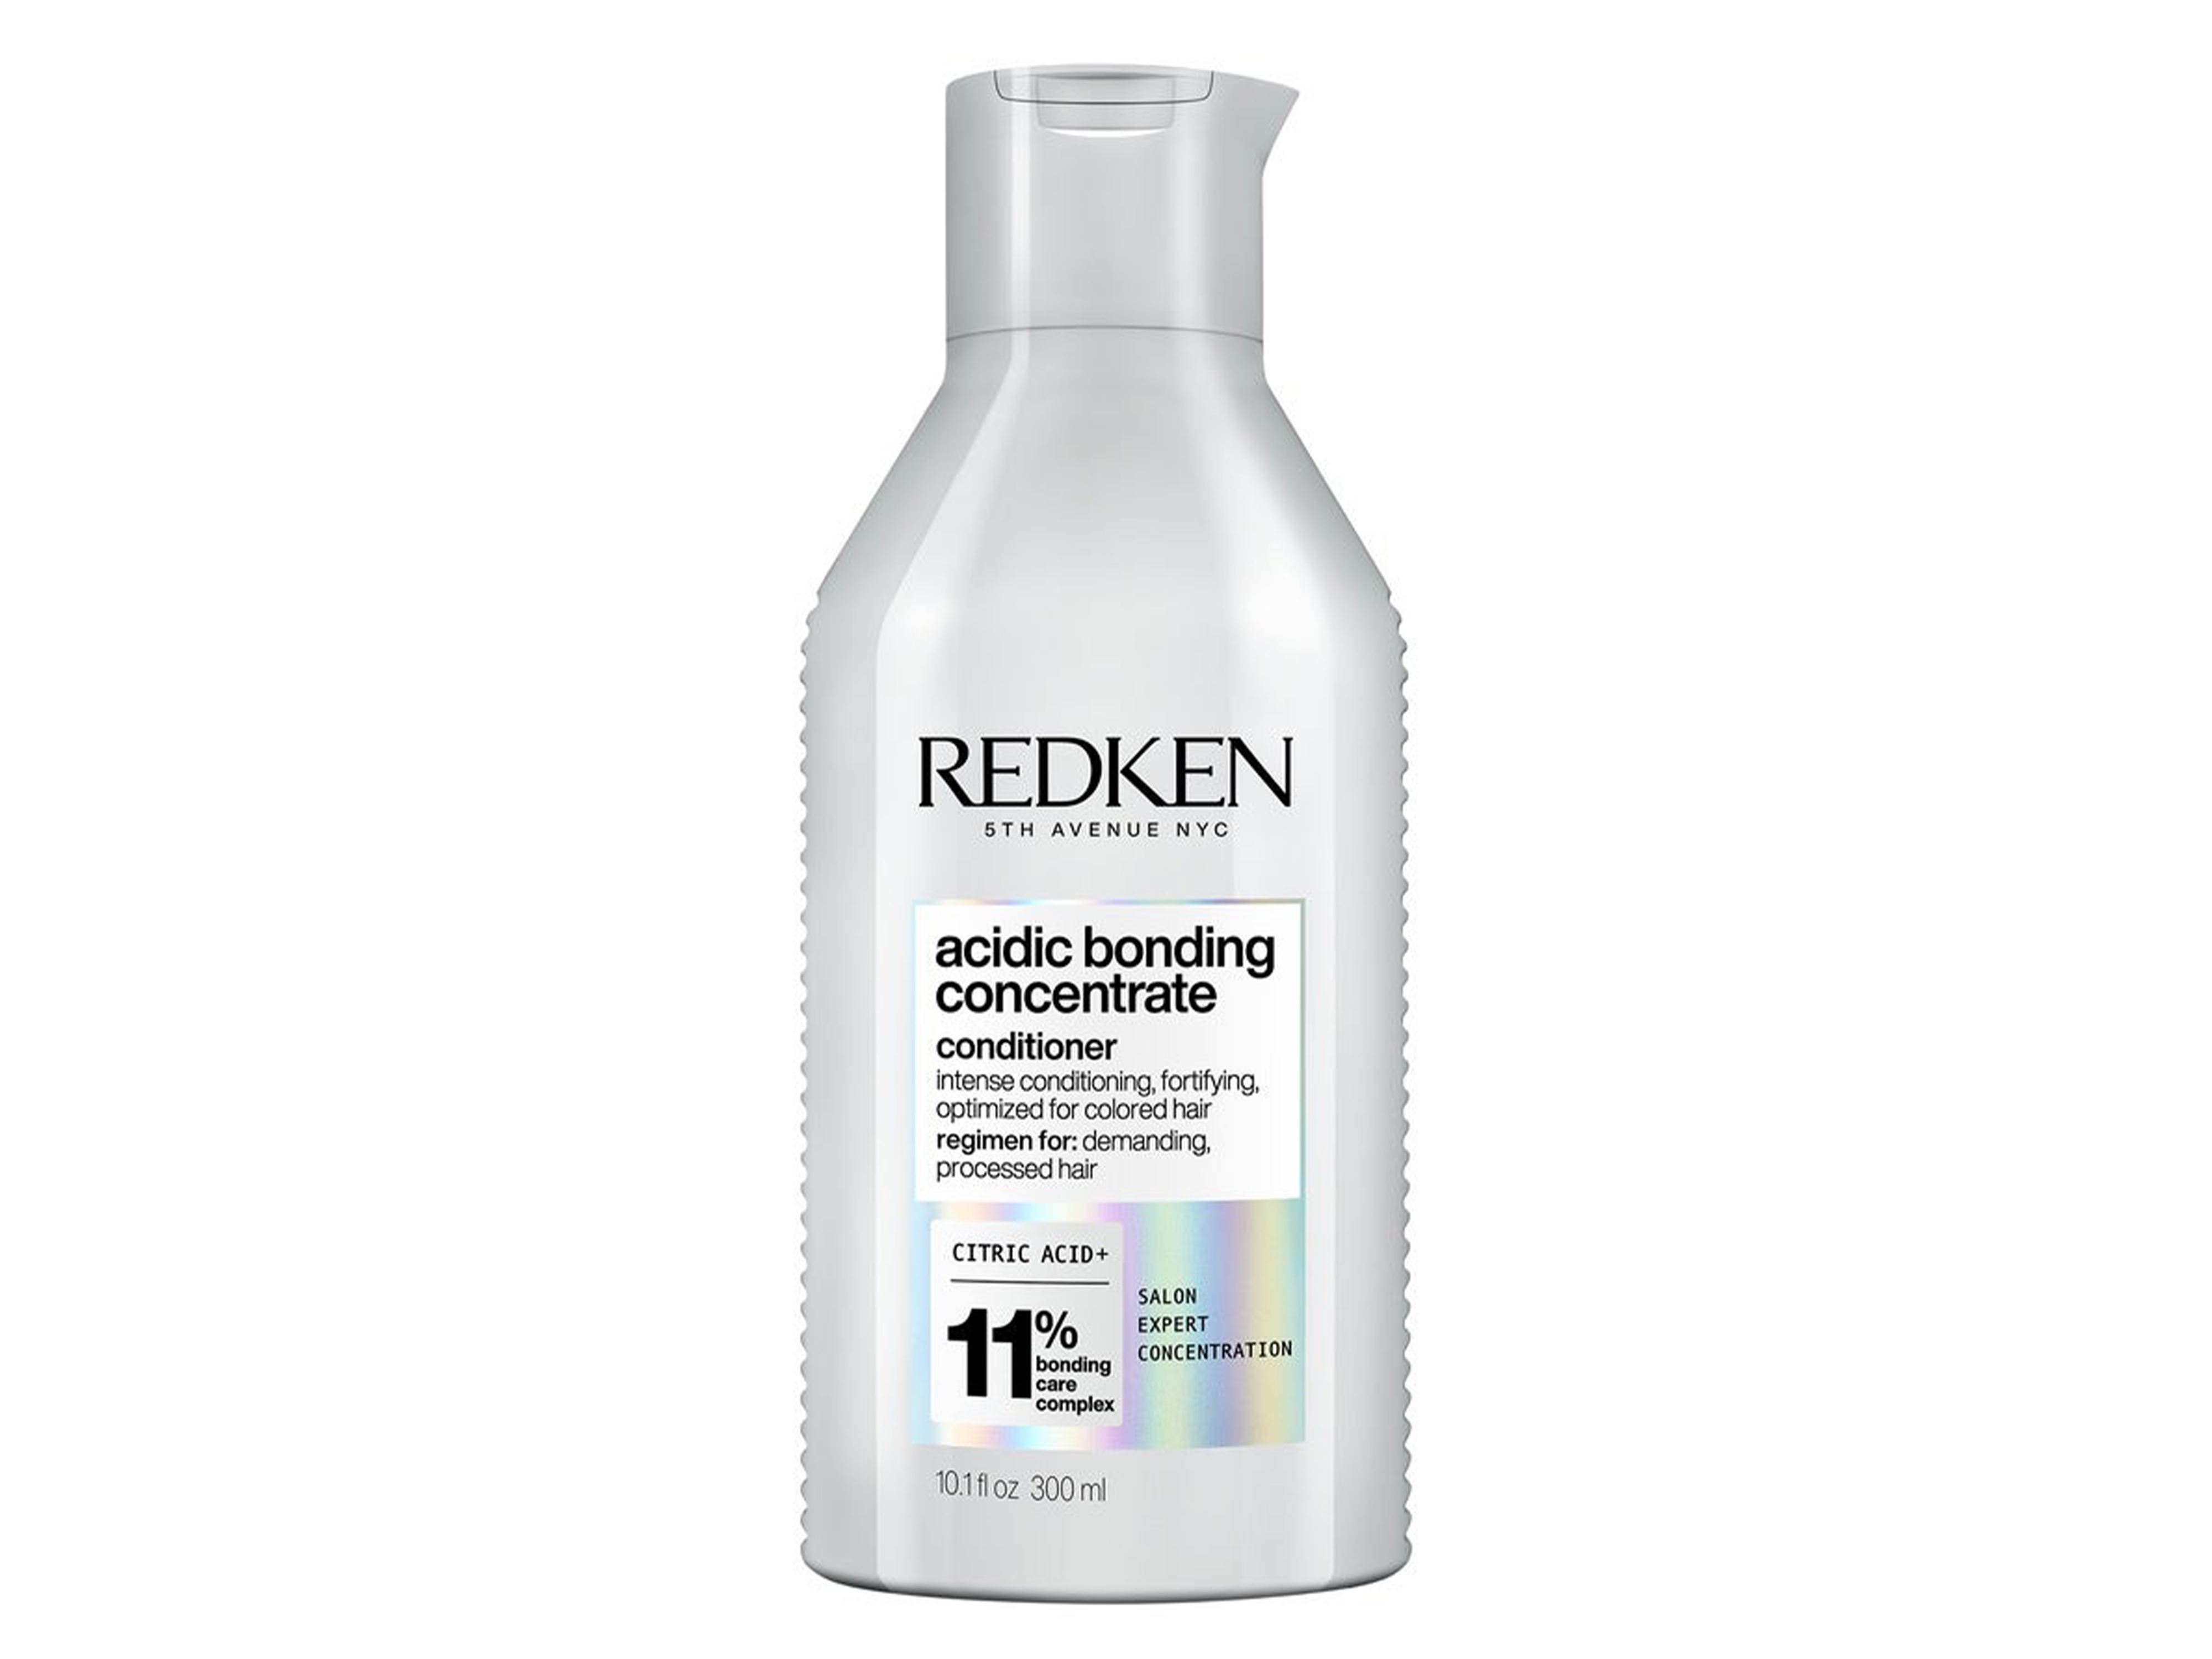 Redken Acidic Bonding Concentrate Conditioner, 300 ml